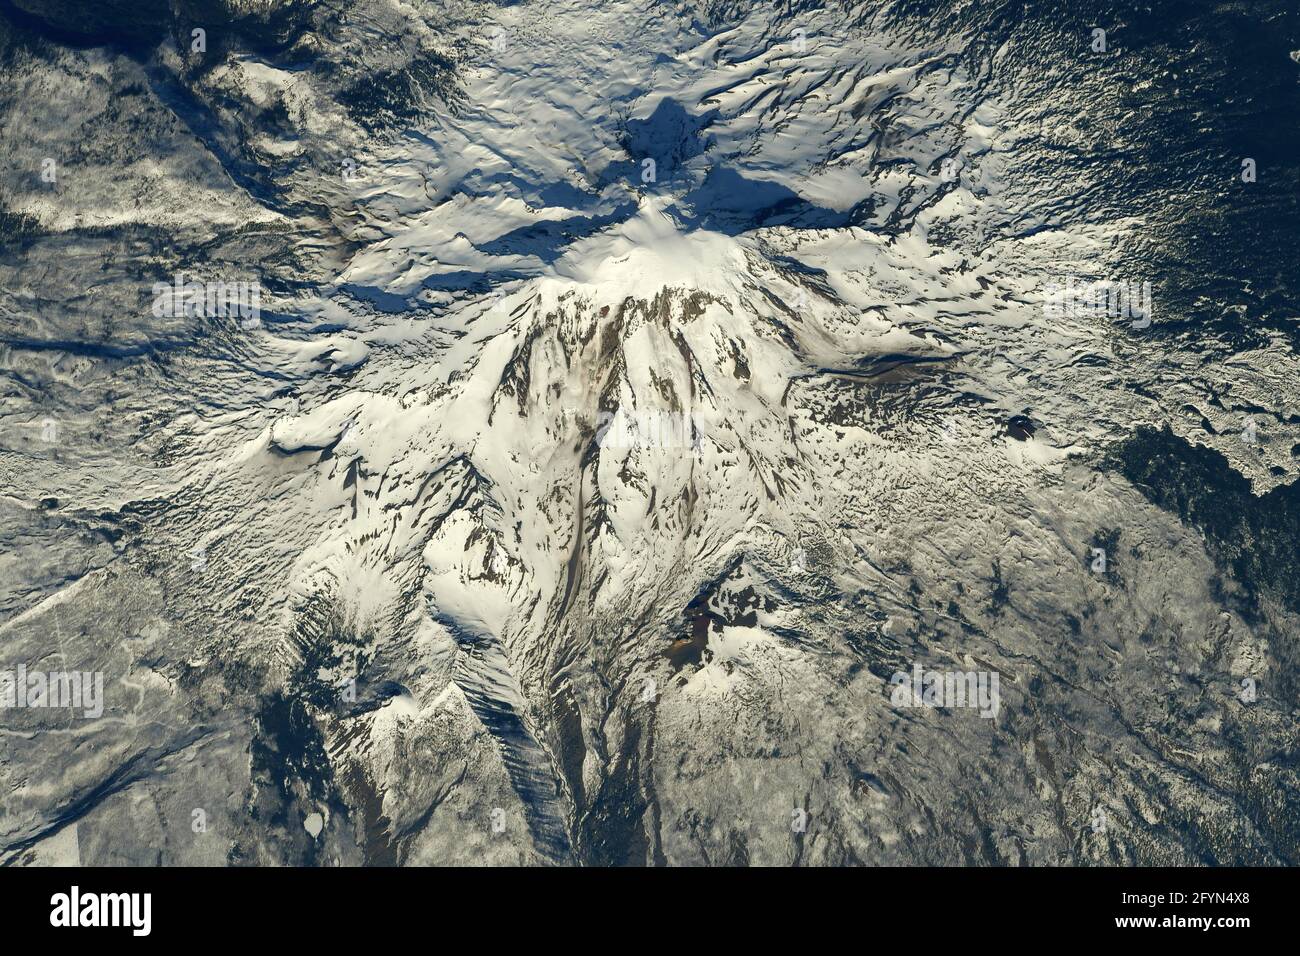 MOUNT ADAMS, USA - 01 maggio 2021 - Mount Adams fotografato da un astronauta sulla Stazione spaziale Internazionale. Situato nello stato di Washington, il pos Foto Stock